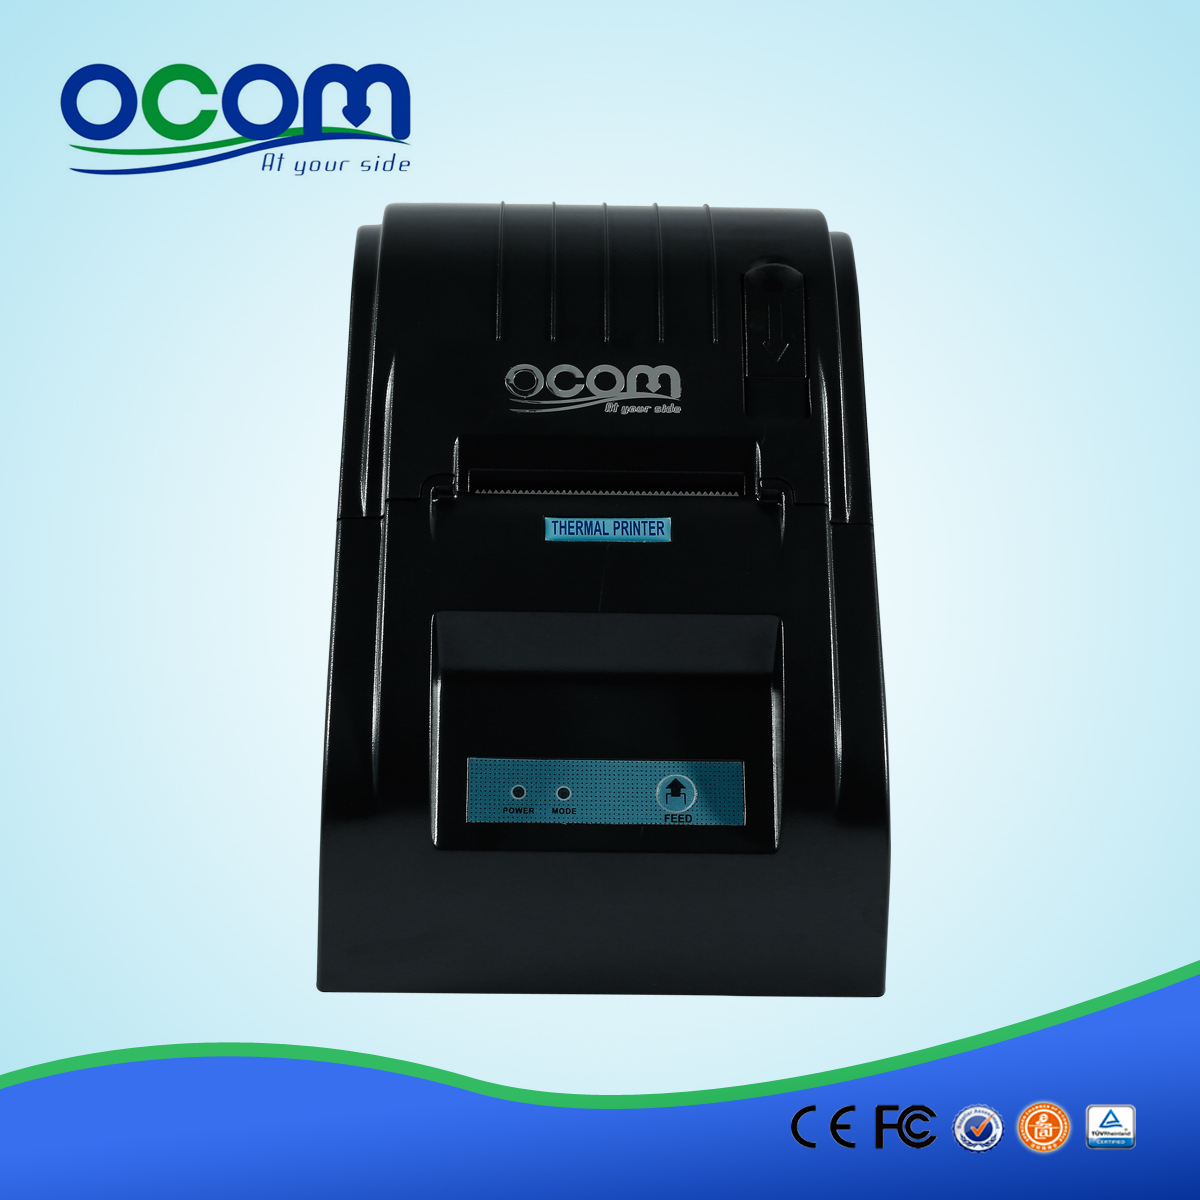 Preço da impressora térmica usb OCPP-585